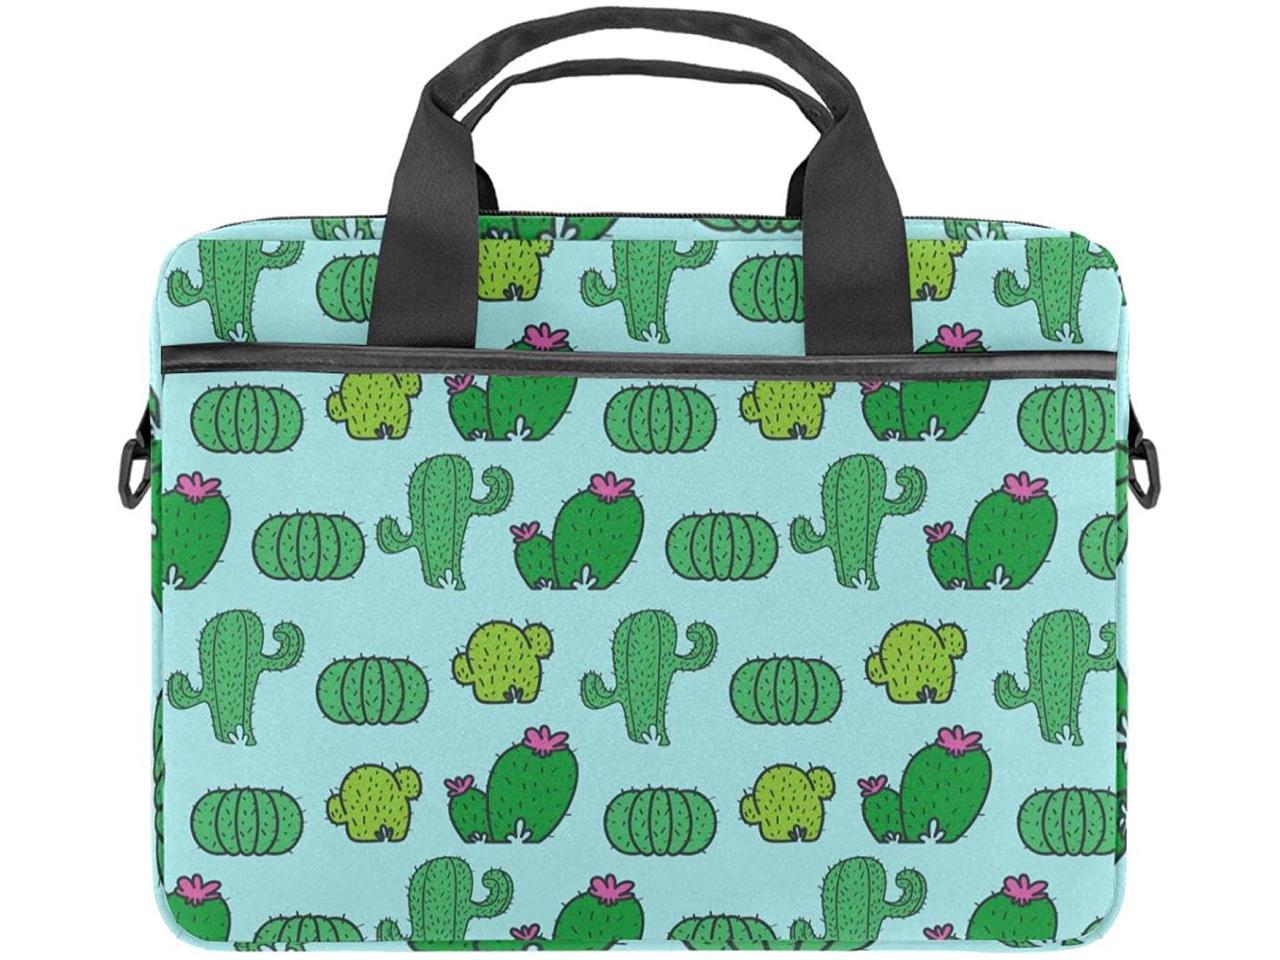 Great to Outdoor Activities Laptop Bag Briefcase Shoulder Bag Cactus Flowers 15.6 Inch Tote Bag Laptop Messenger Shoulder Bag Case Notebook Bag 